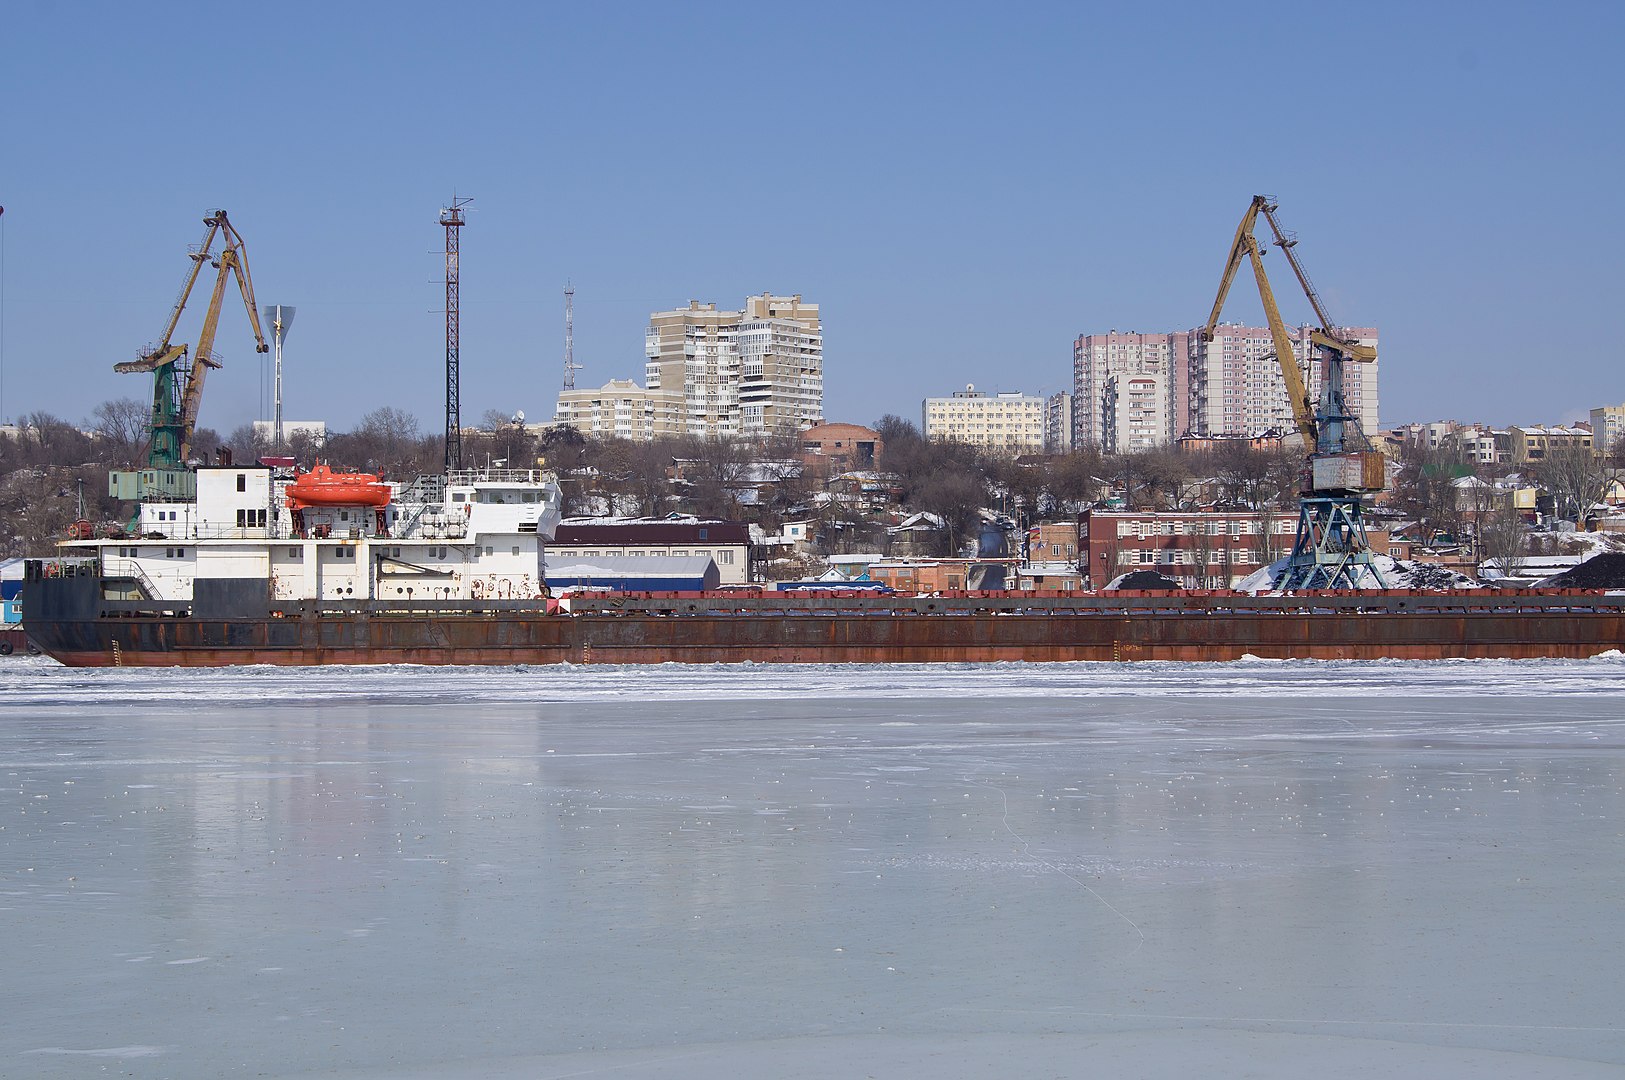 Ростовский морской торговый порт. Фото Vyacheslav Argenberg / CC BY 4.0 / Википедия.